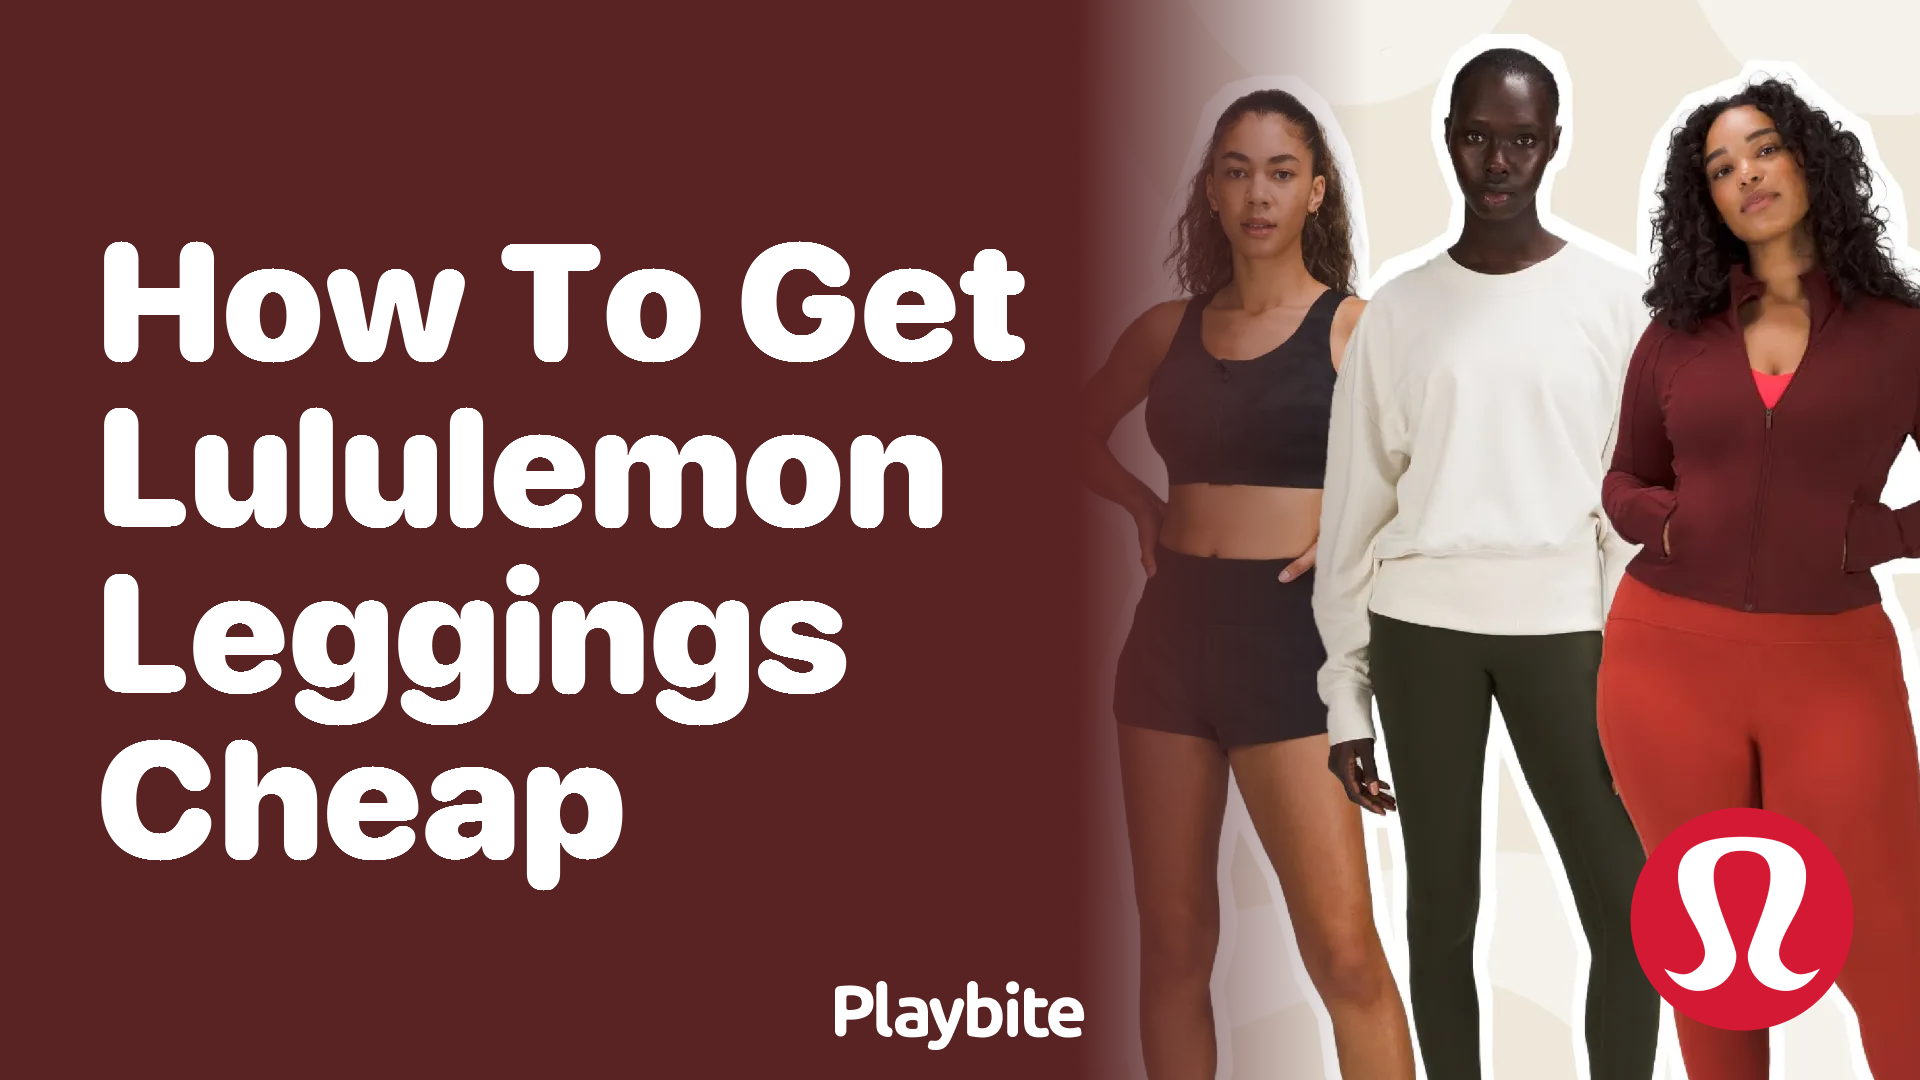 How to Get Lululemon Leggings Cheap - Playbite